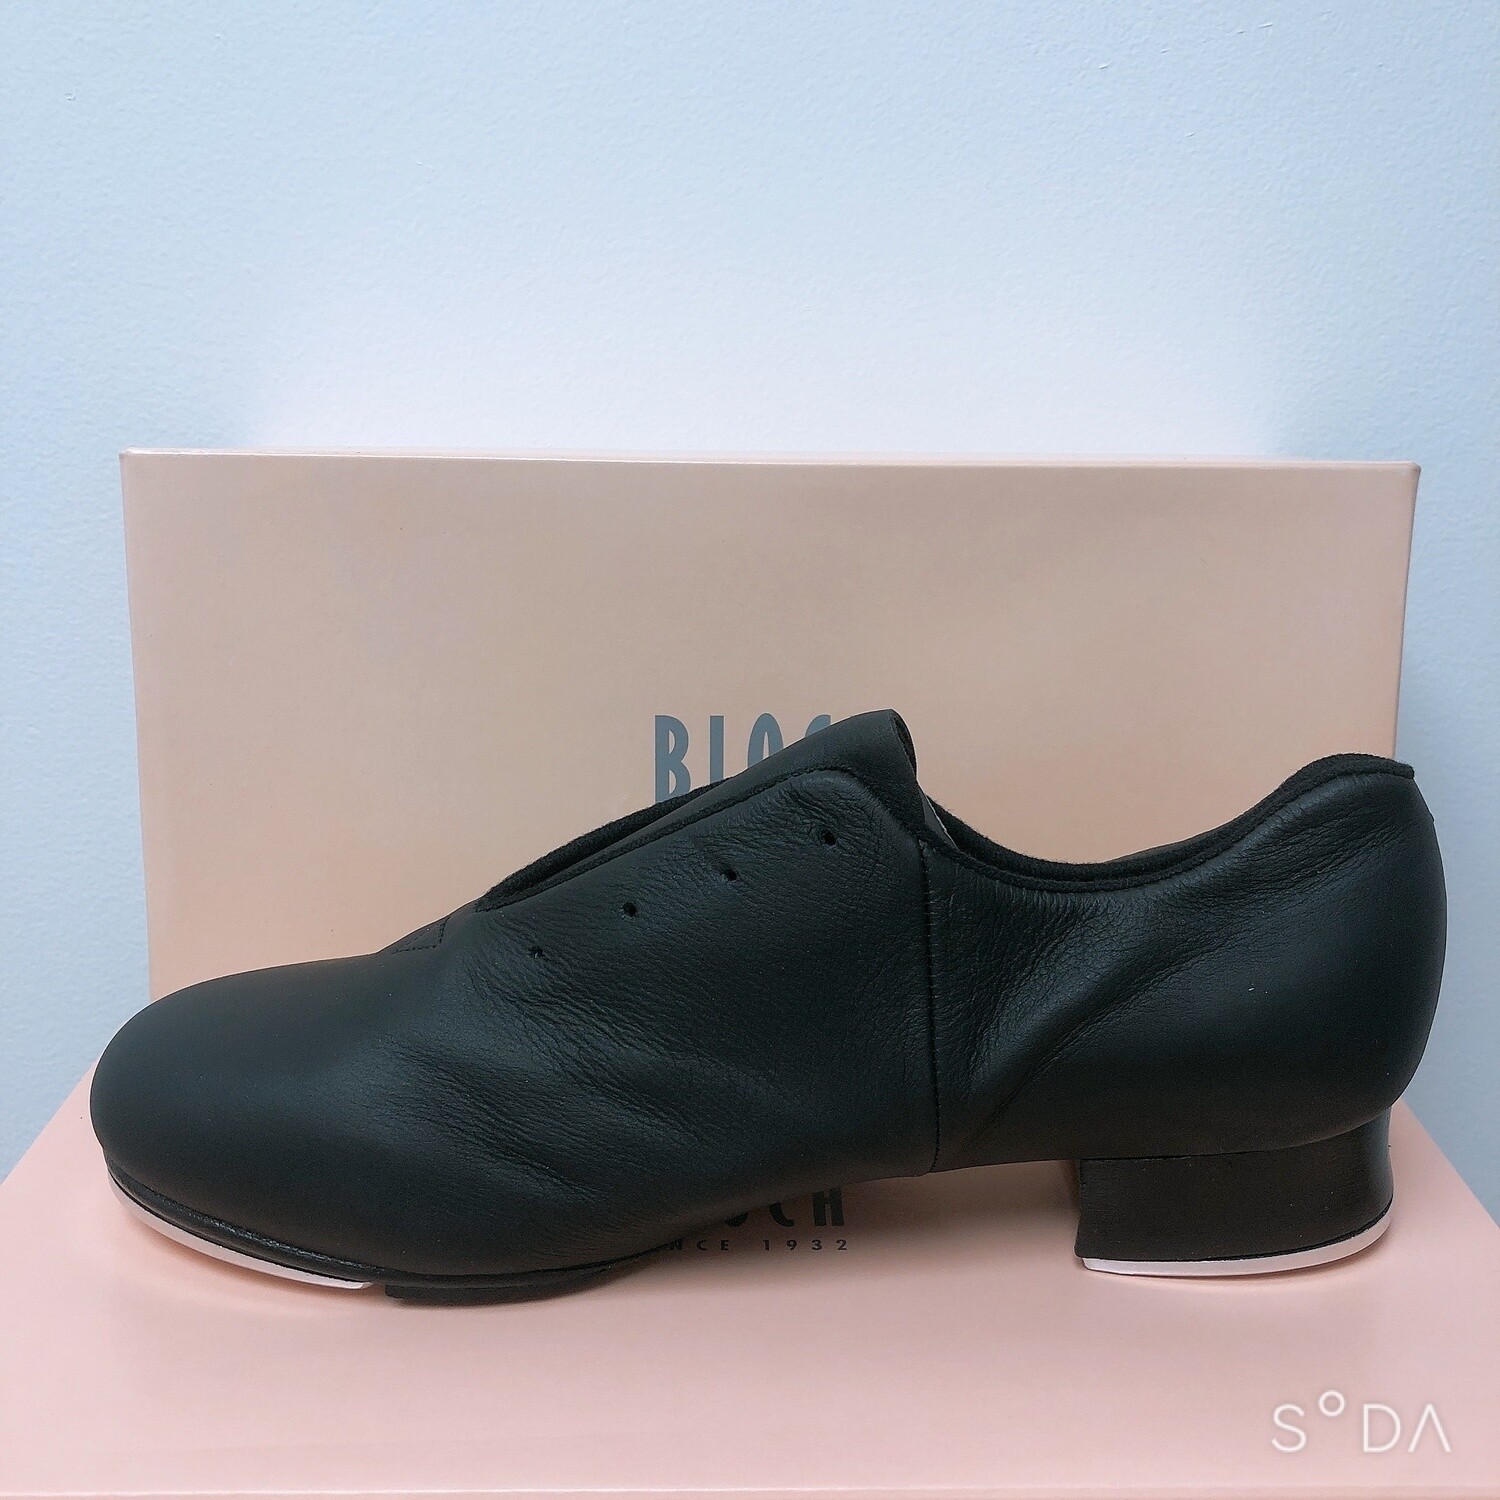 Bloch Flex Jazz Style Tap Shoe